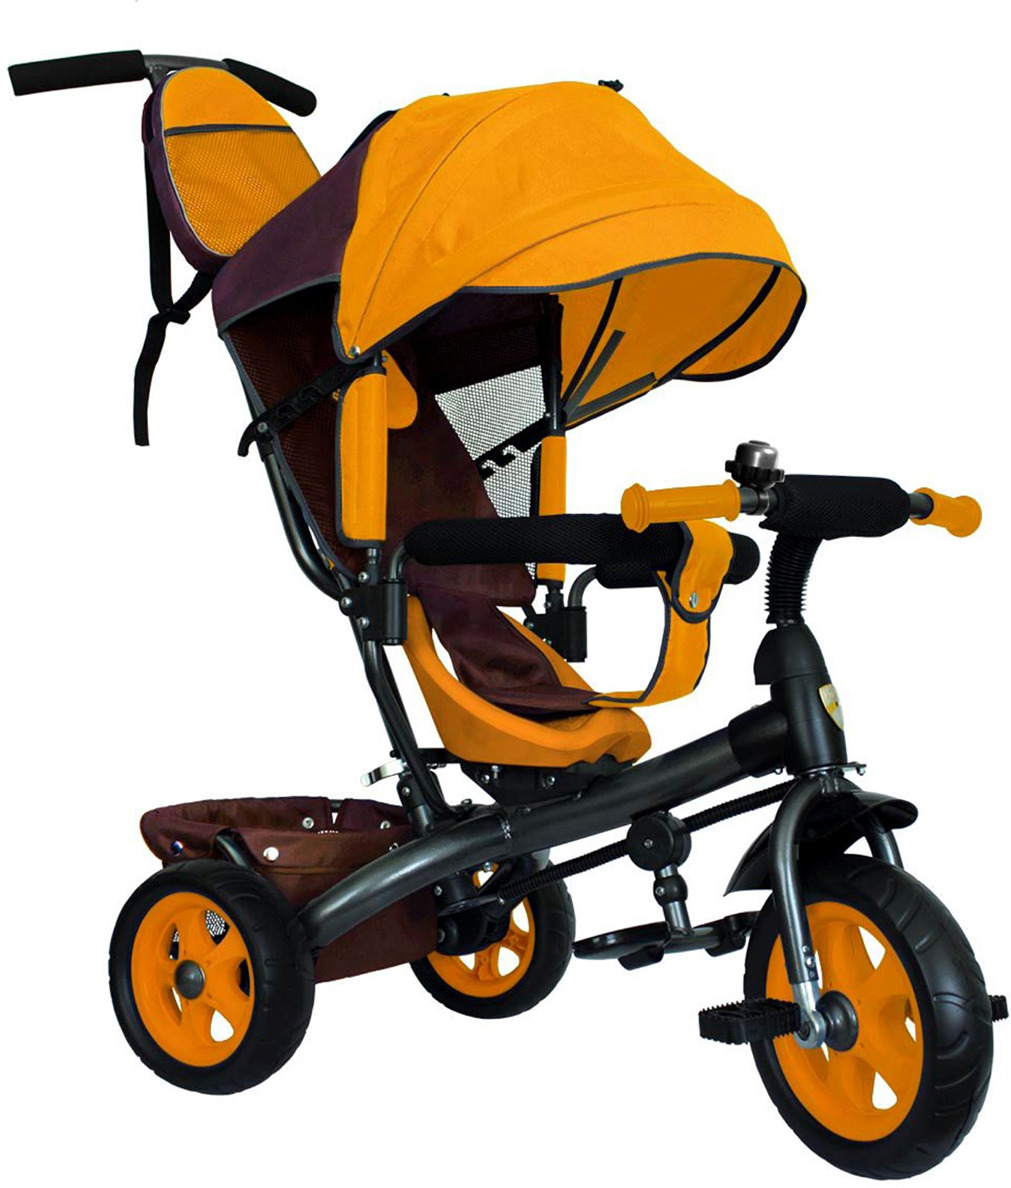 Велосипед трехколесный детский Лучик Vivat 2, 3409405, коричневый, желтый